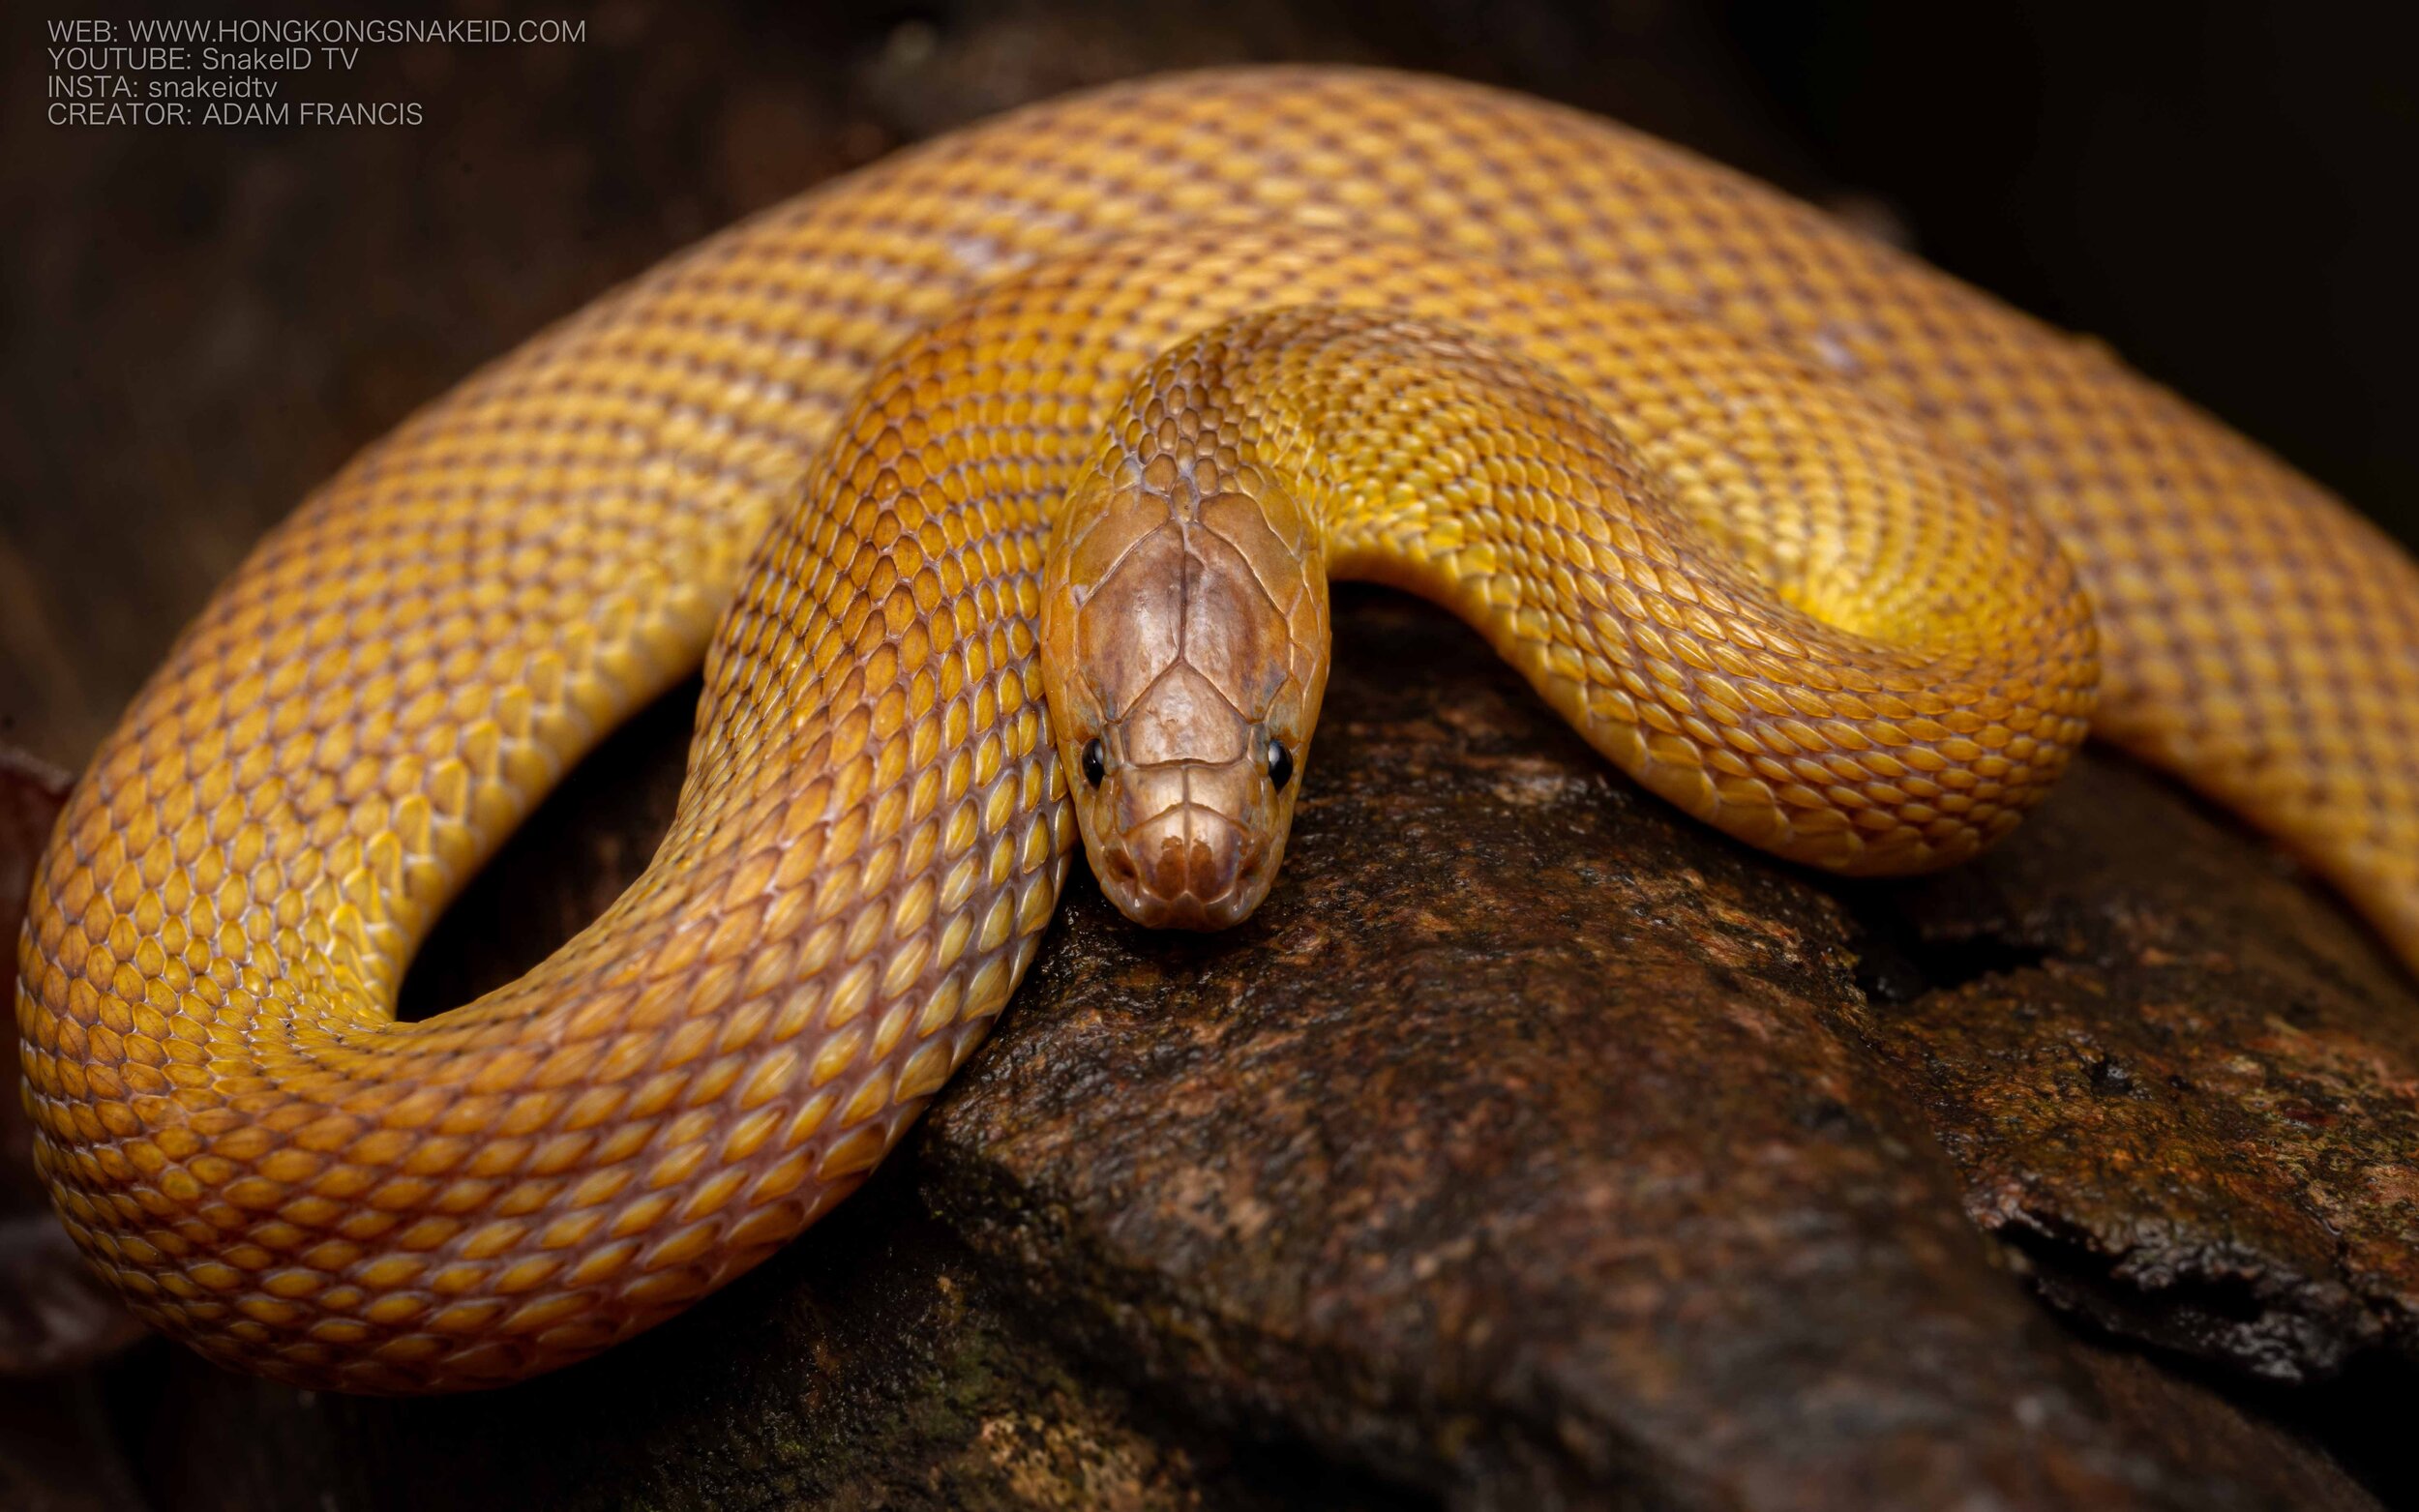 Burrowing Rufous Snake - Achalinus rufescens